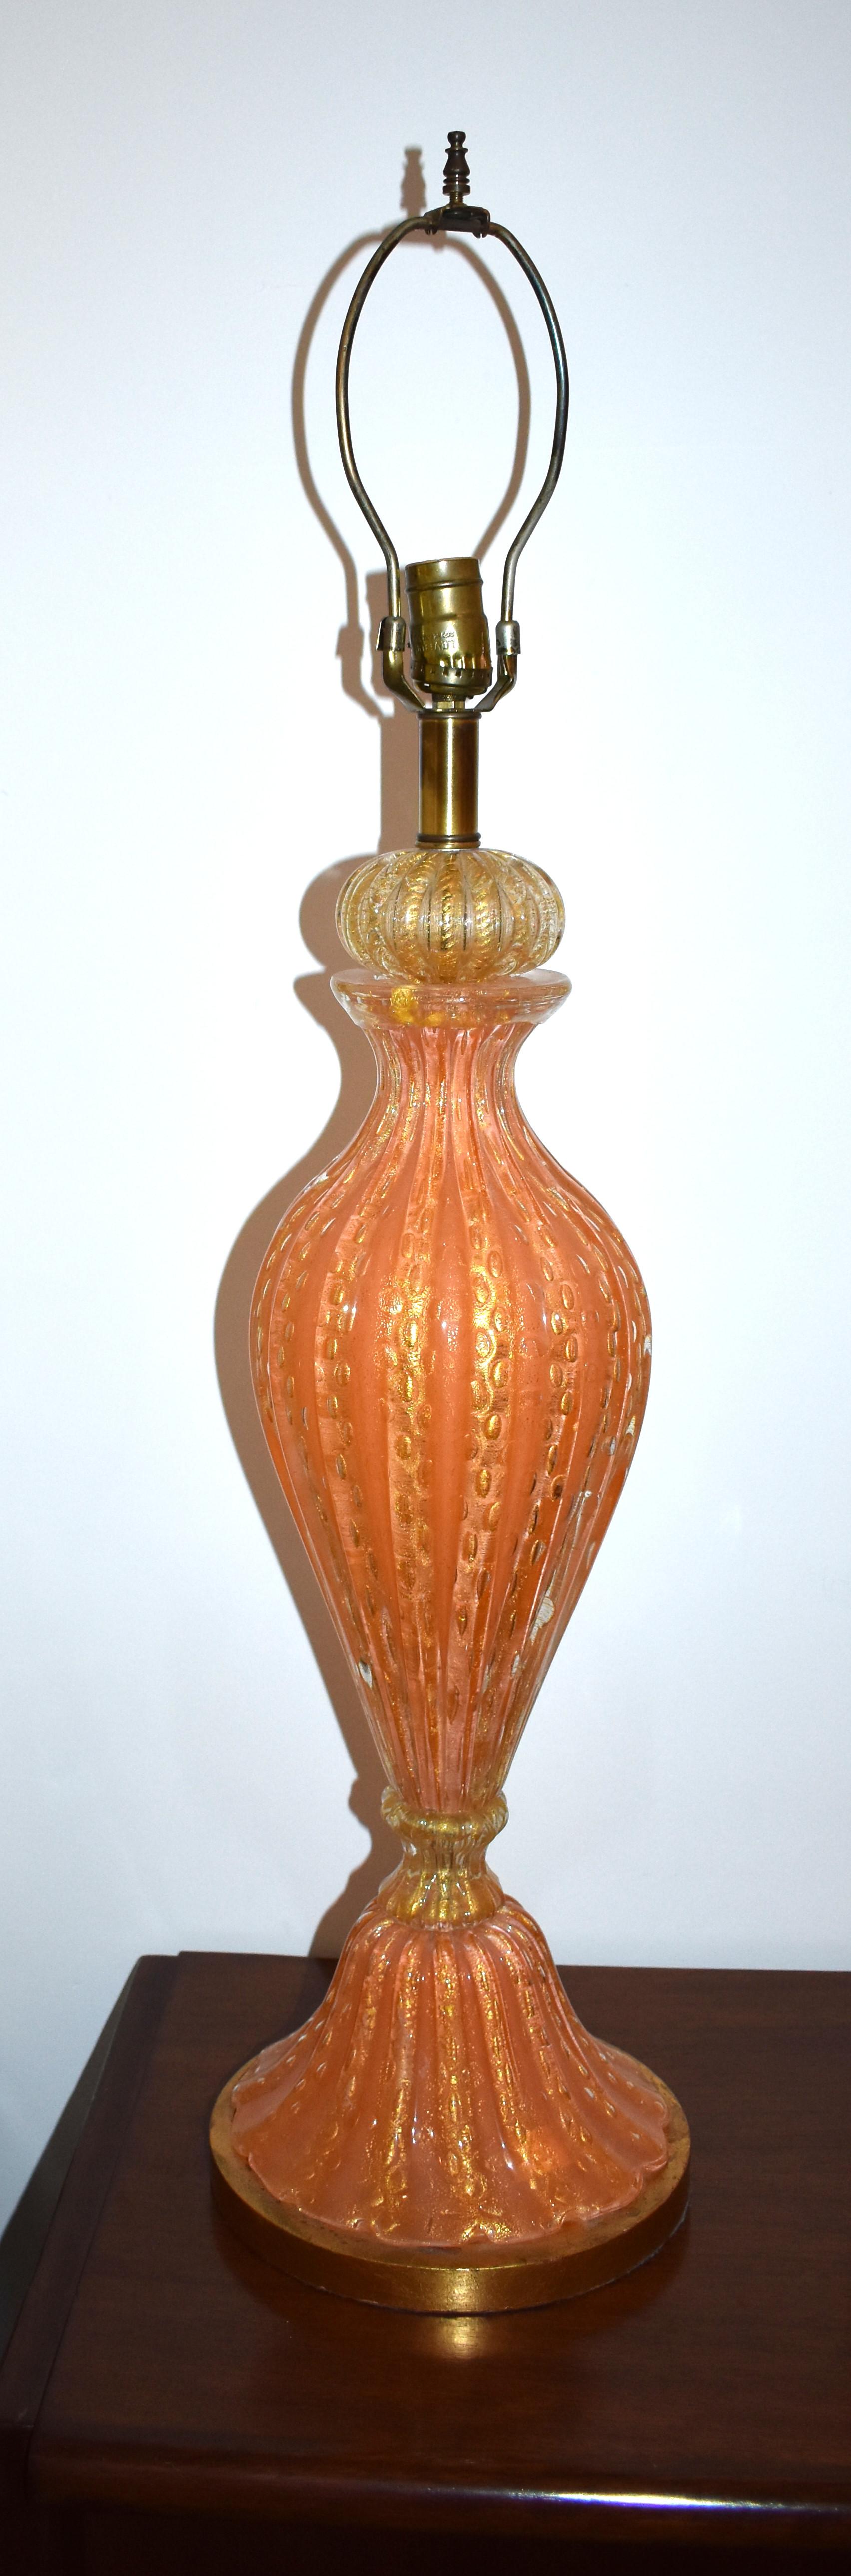 Une seule lampe de table en verre de Murano soufflé à la main, d'inclusions orange et or. Le verre nervuré est épais et lourd avec des bulles contrôlées et est monté sur une base en bois finition dorée.

La hauteur de la partie en verre n'est de